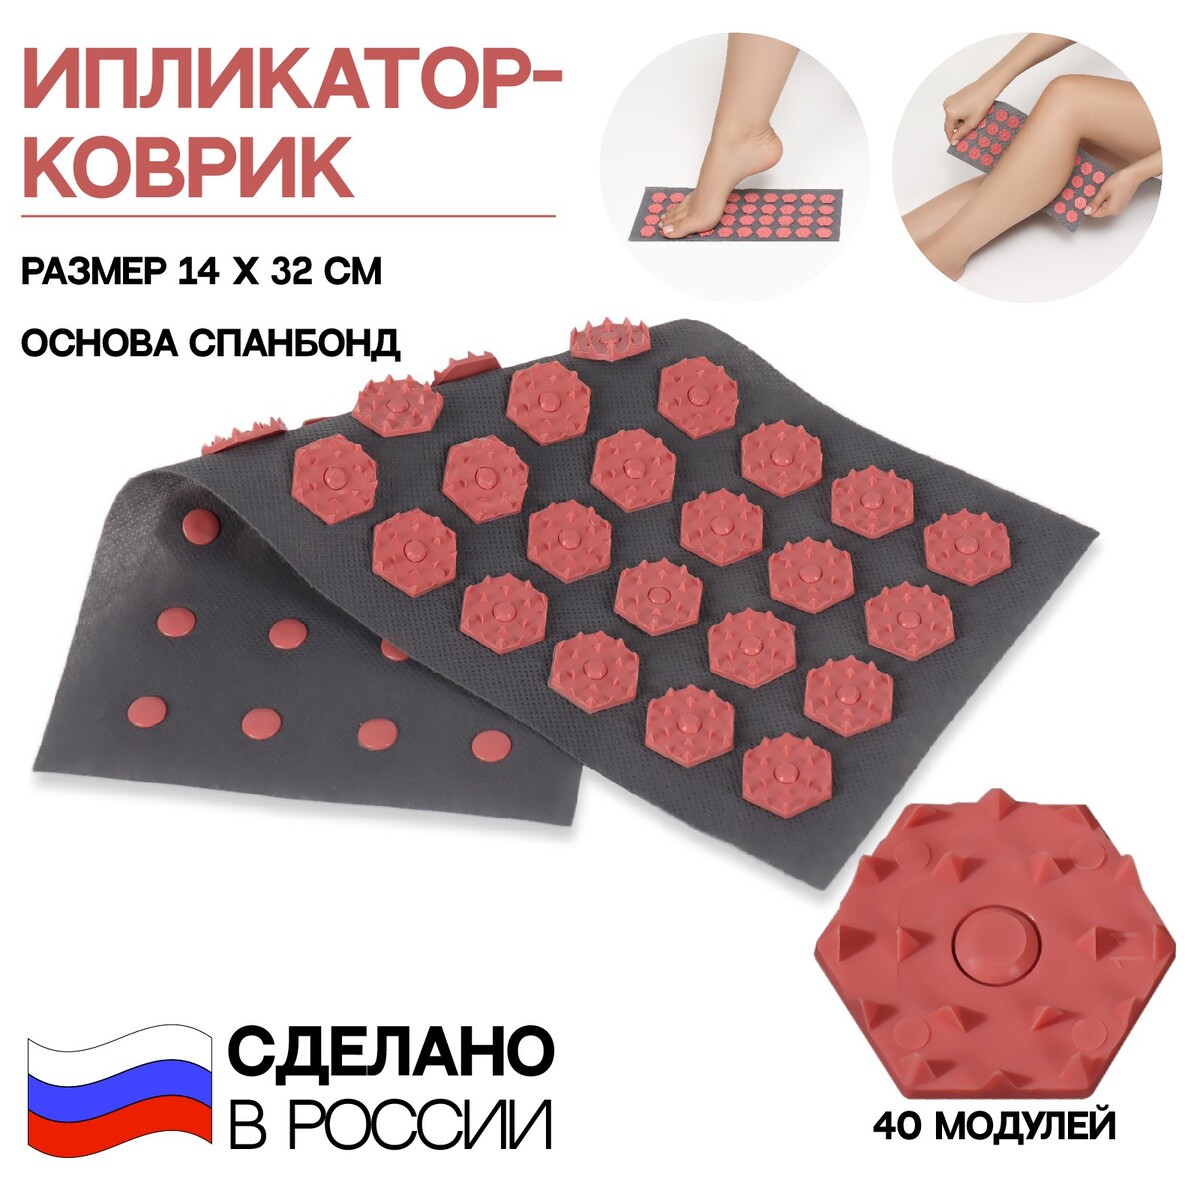 Ипликатор-коврик, основа спанбонд, 40 модулей, 14 × 32 см, цвет темно-серый/красный